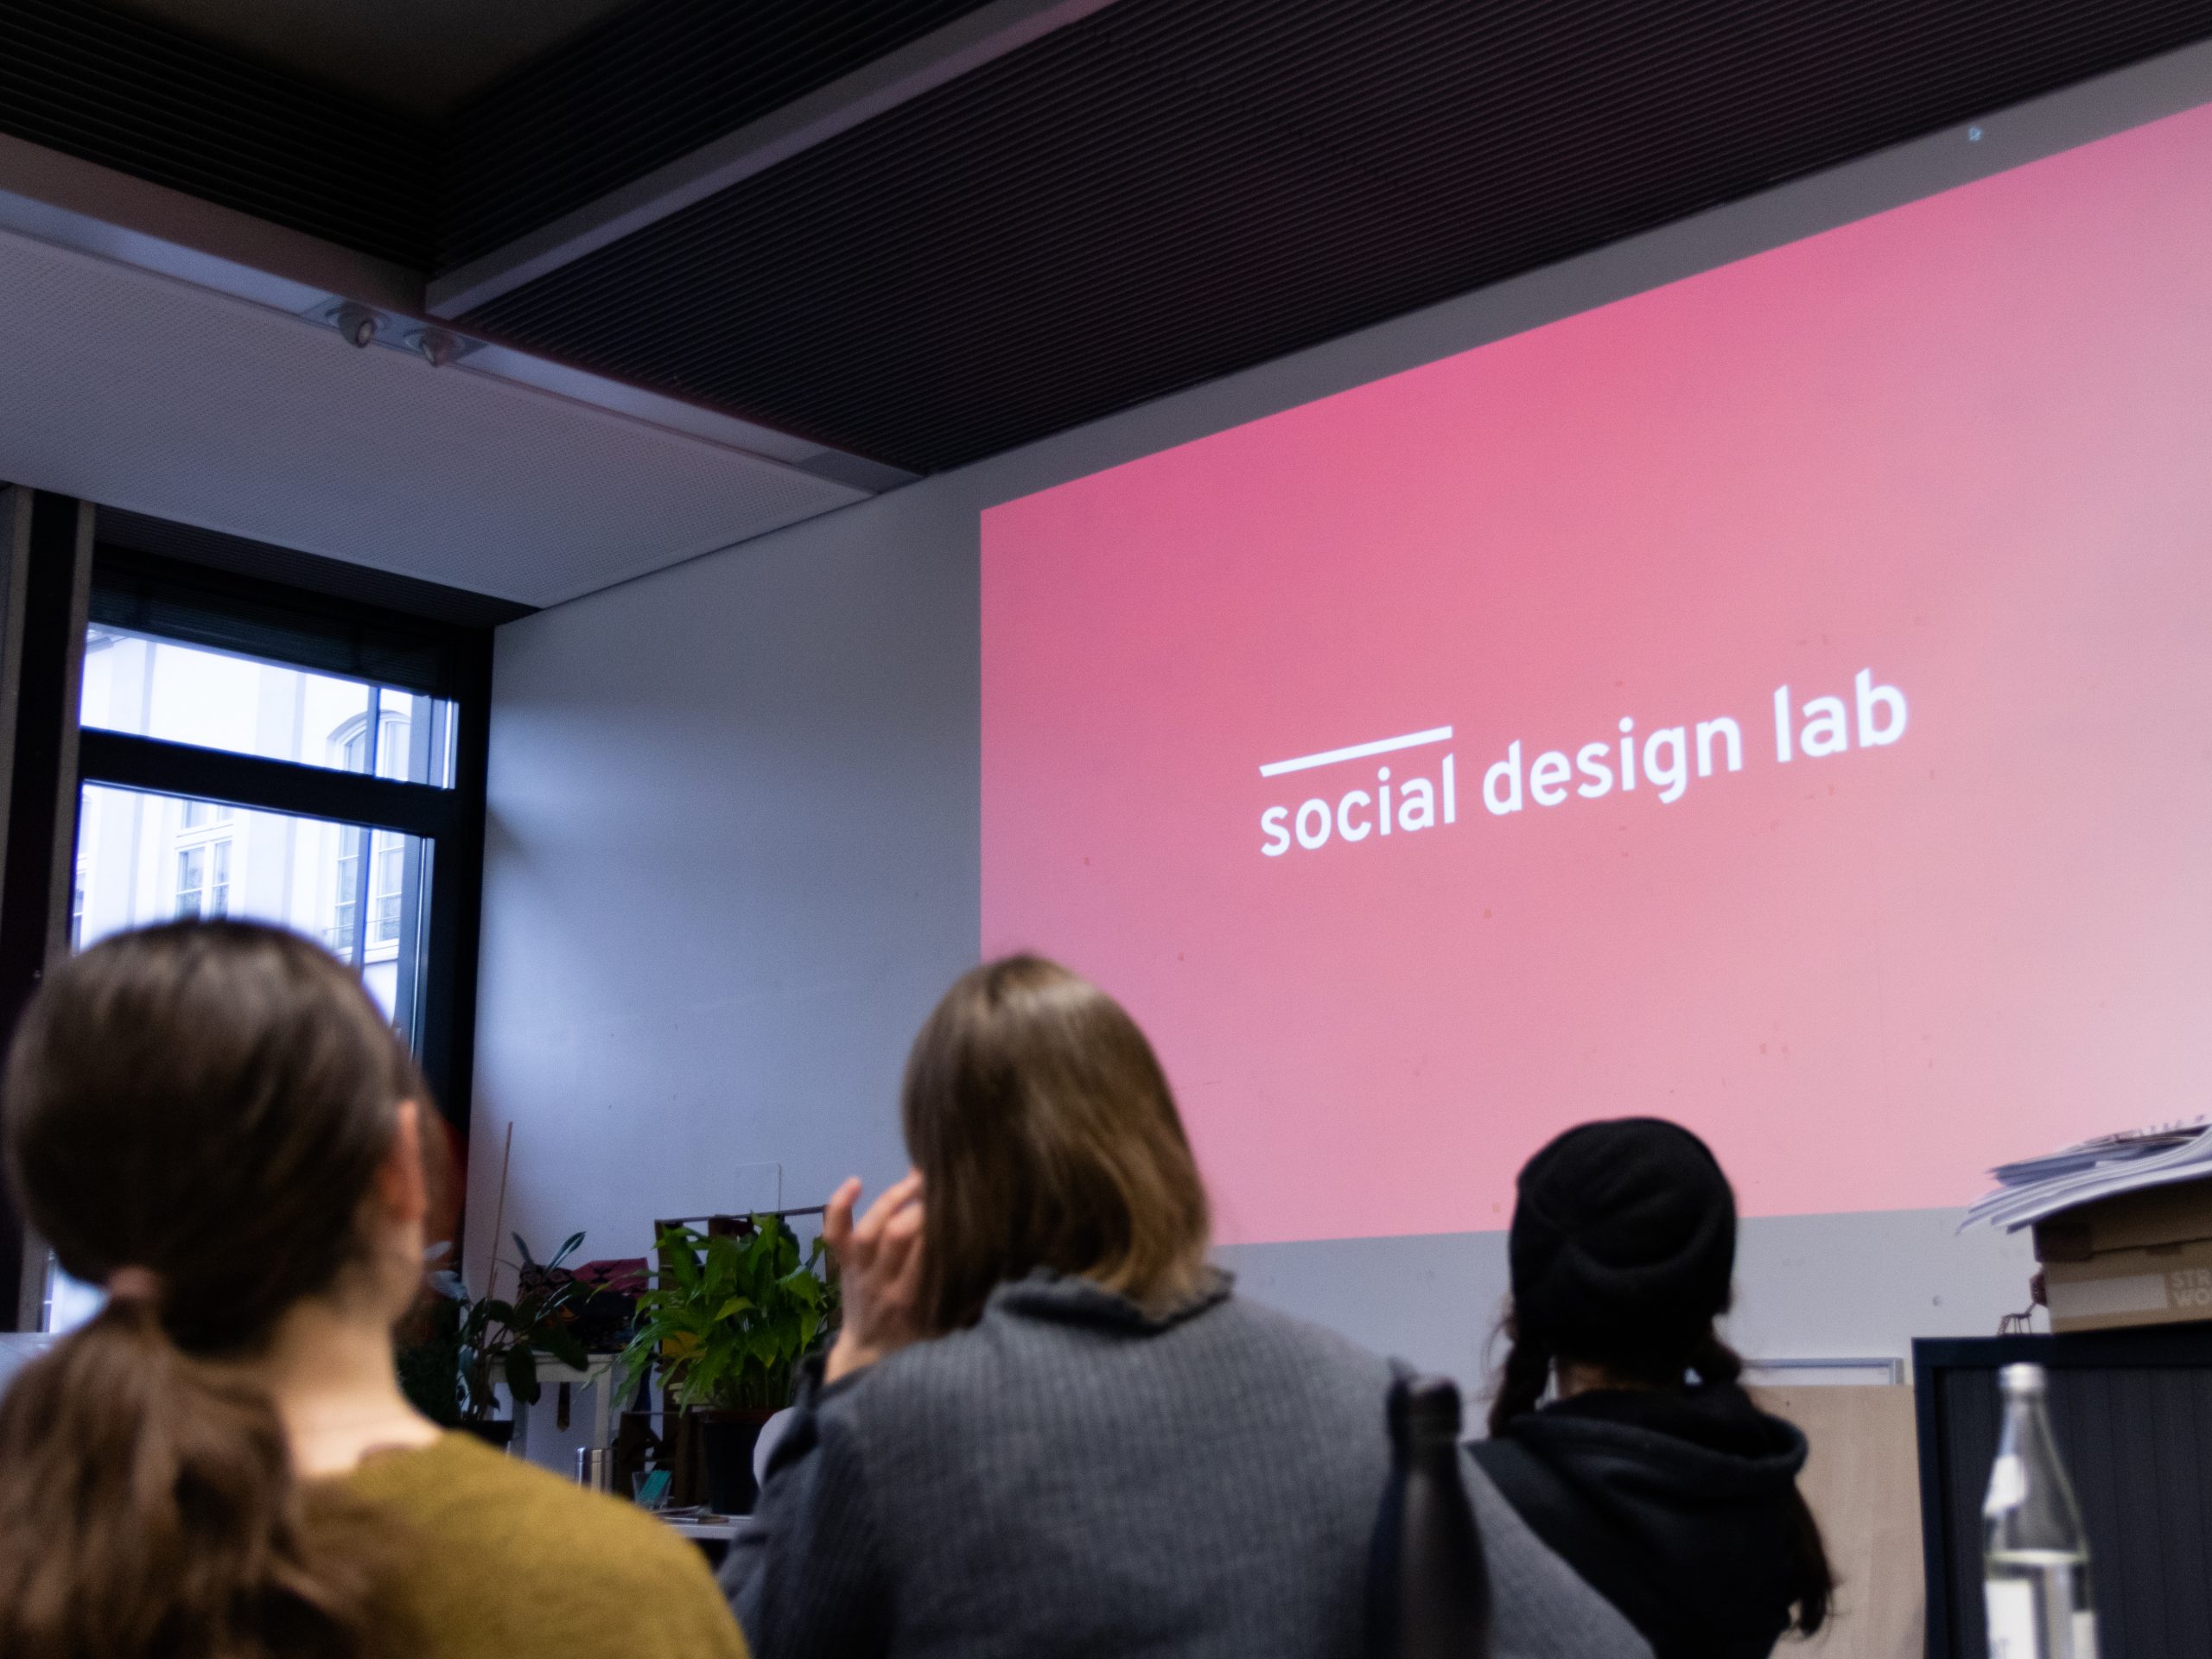 Studierende schauen auf eine Projektionsfläche auf der das Logo des social design labs zu sehen ist.